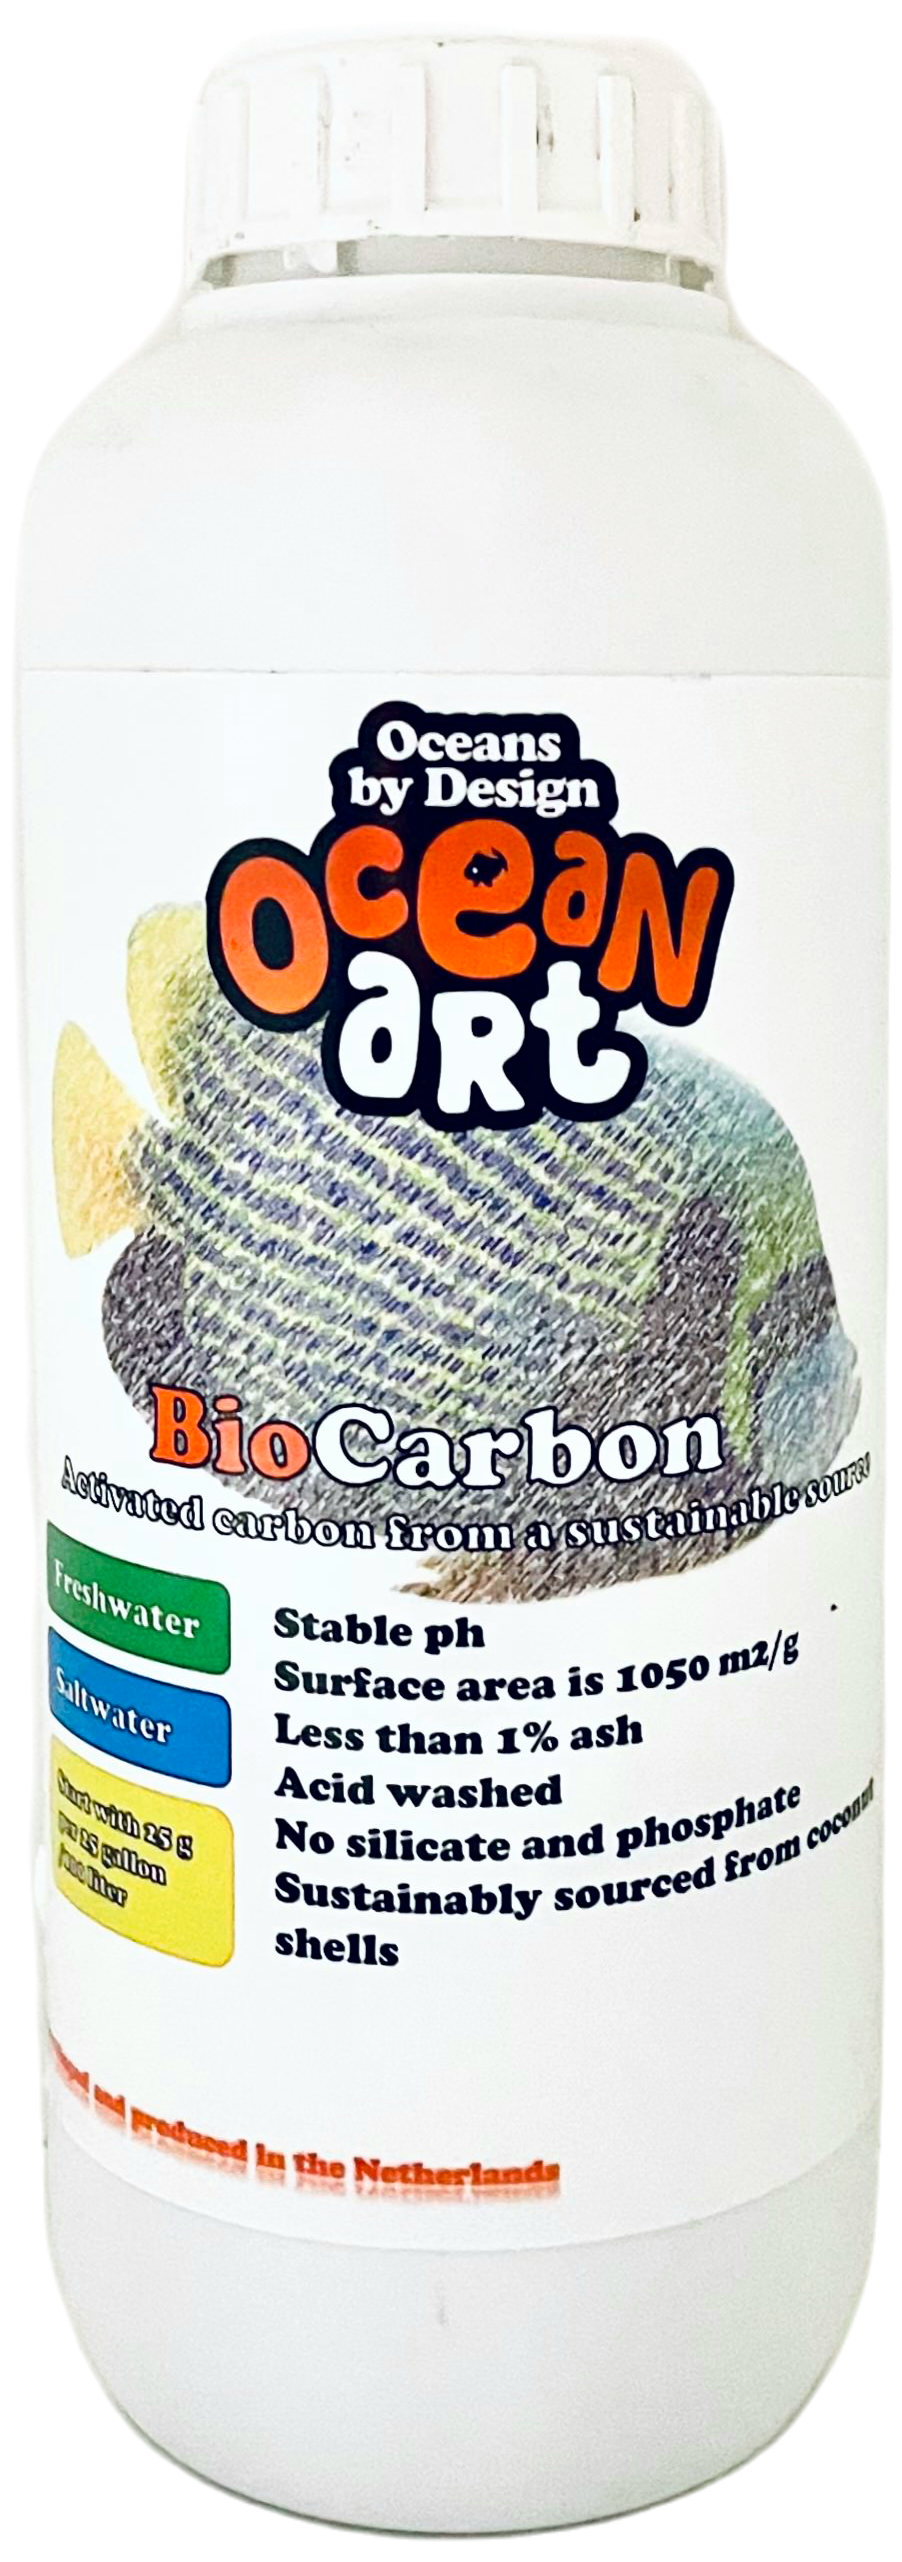 Ocean Art Biocarbon